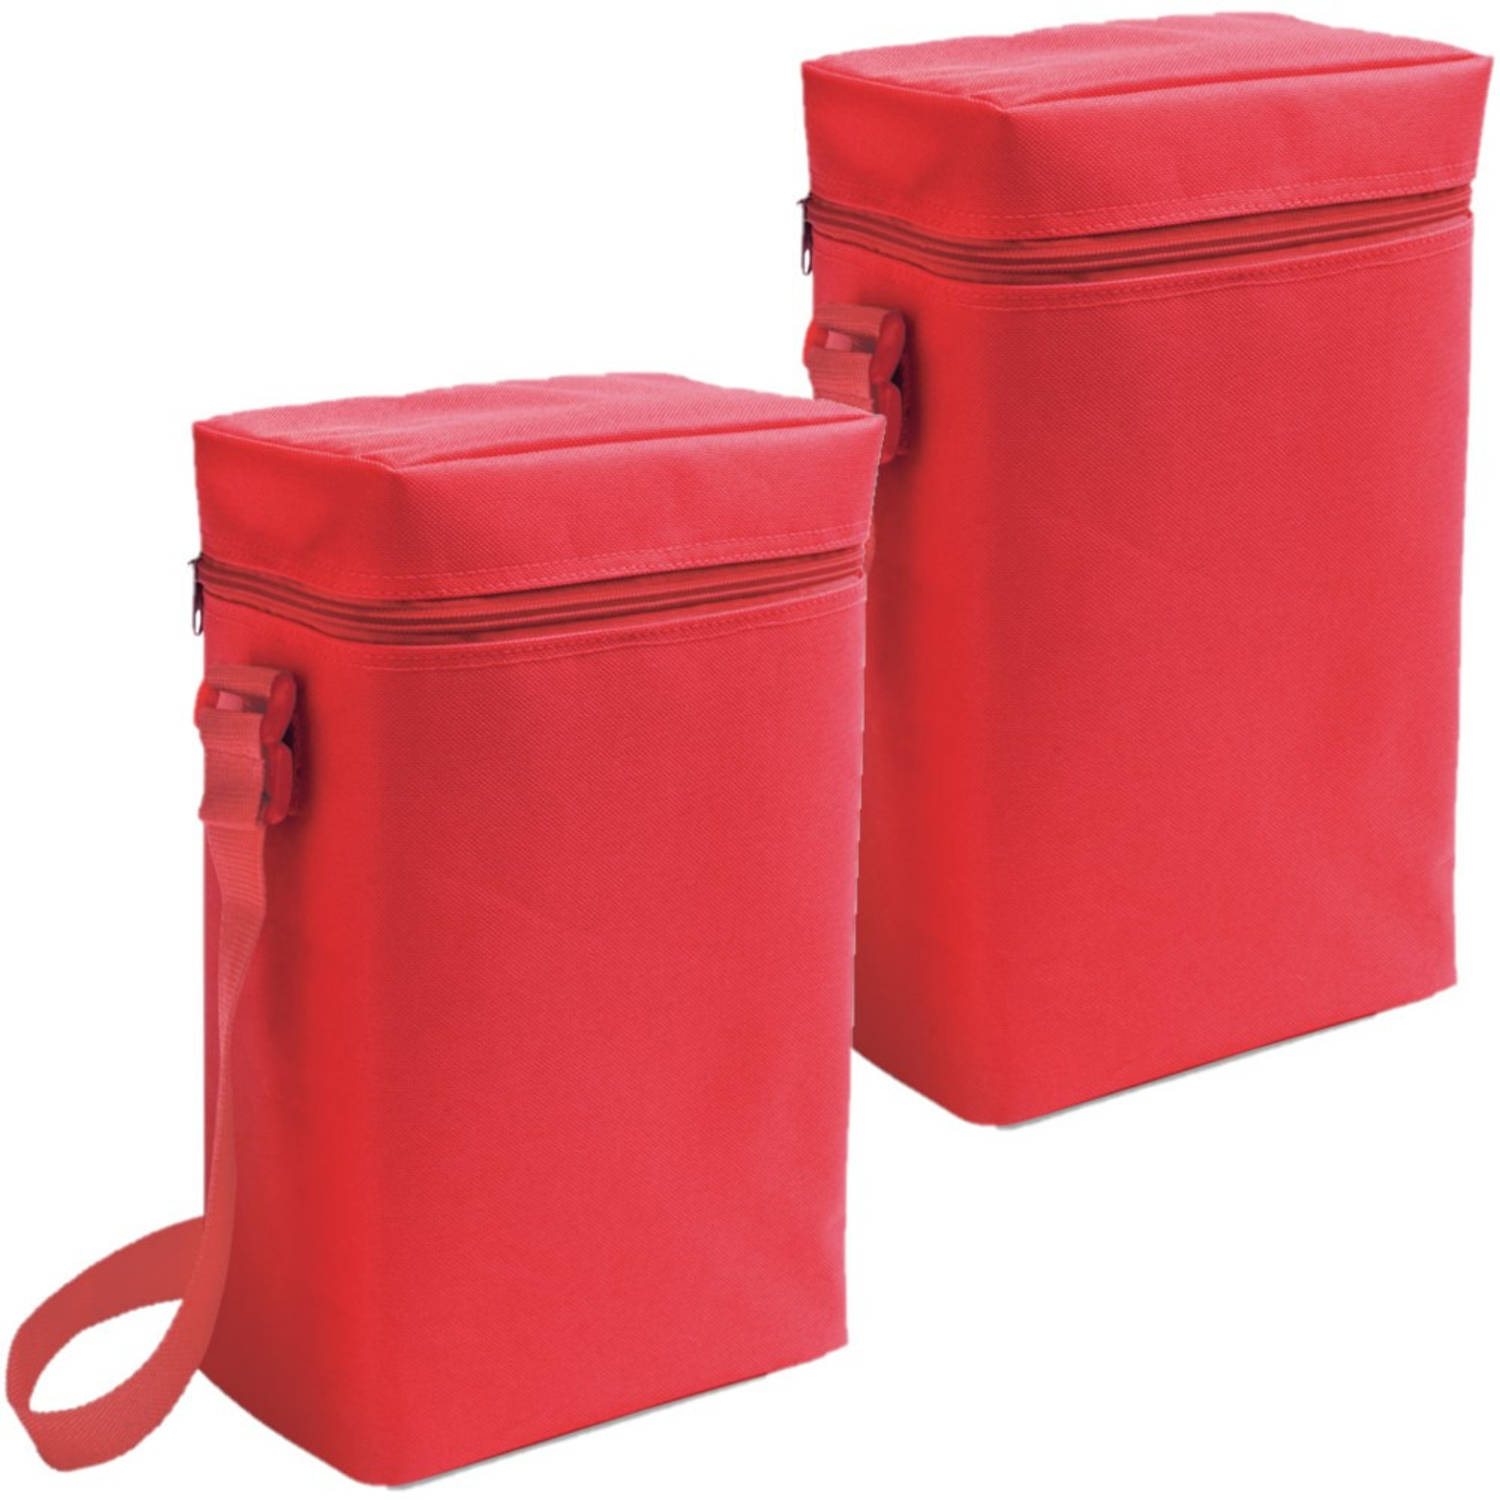 Set van 2x stuks kleine koeltassen voor flessen rood 19 x 34 x 10 cm 6 liter - Koeltas